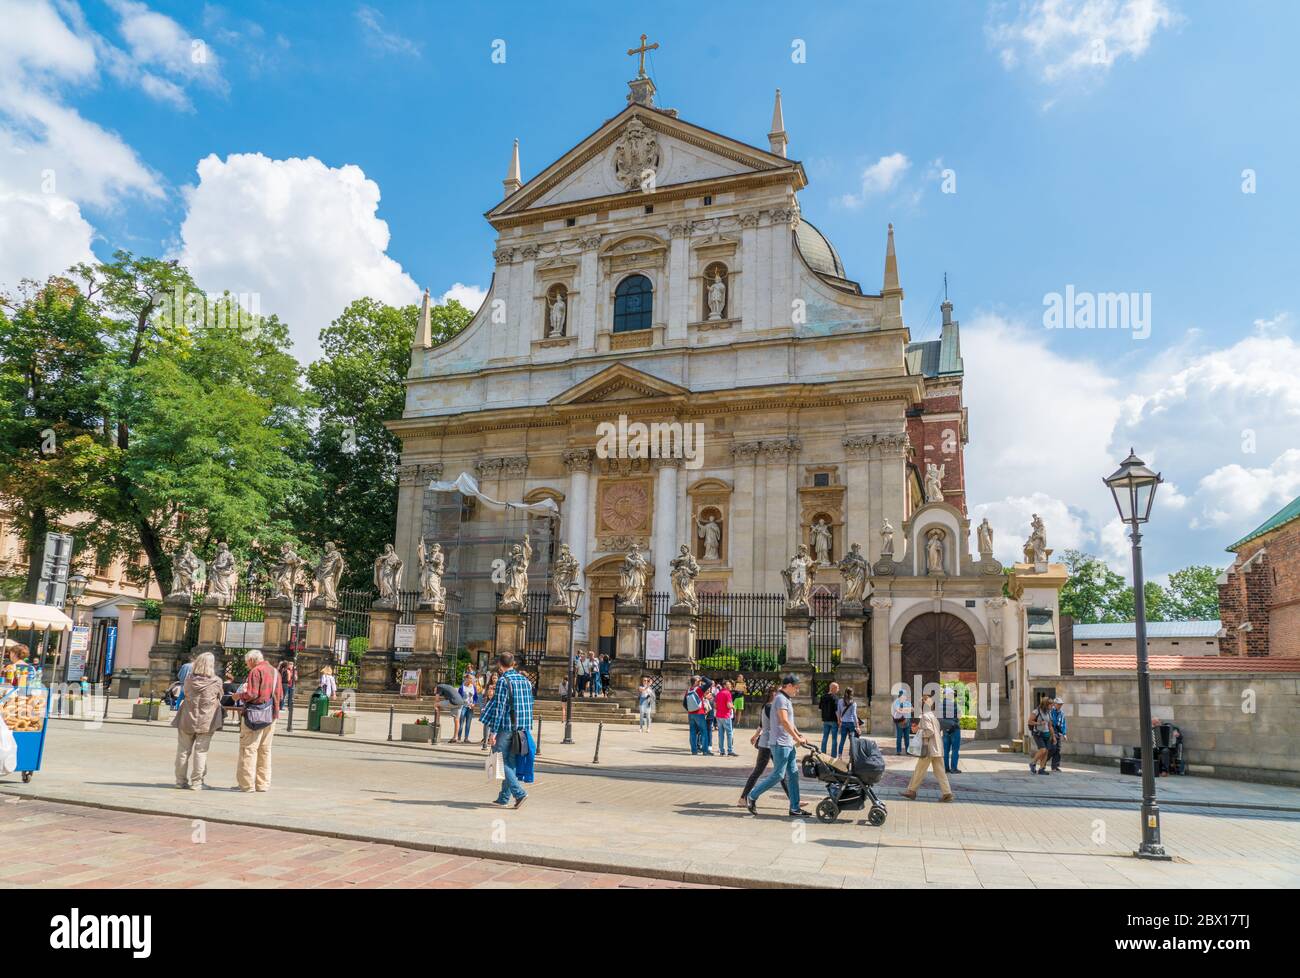 Krakau August 21th 2017: Tourists passing the old church (Kościół Rzymskokatolicki pw. Świętych Apostołów Piotra i Pawła) on Grodzka street in the cen Stock Photo